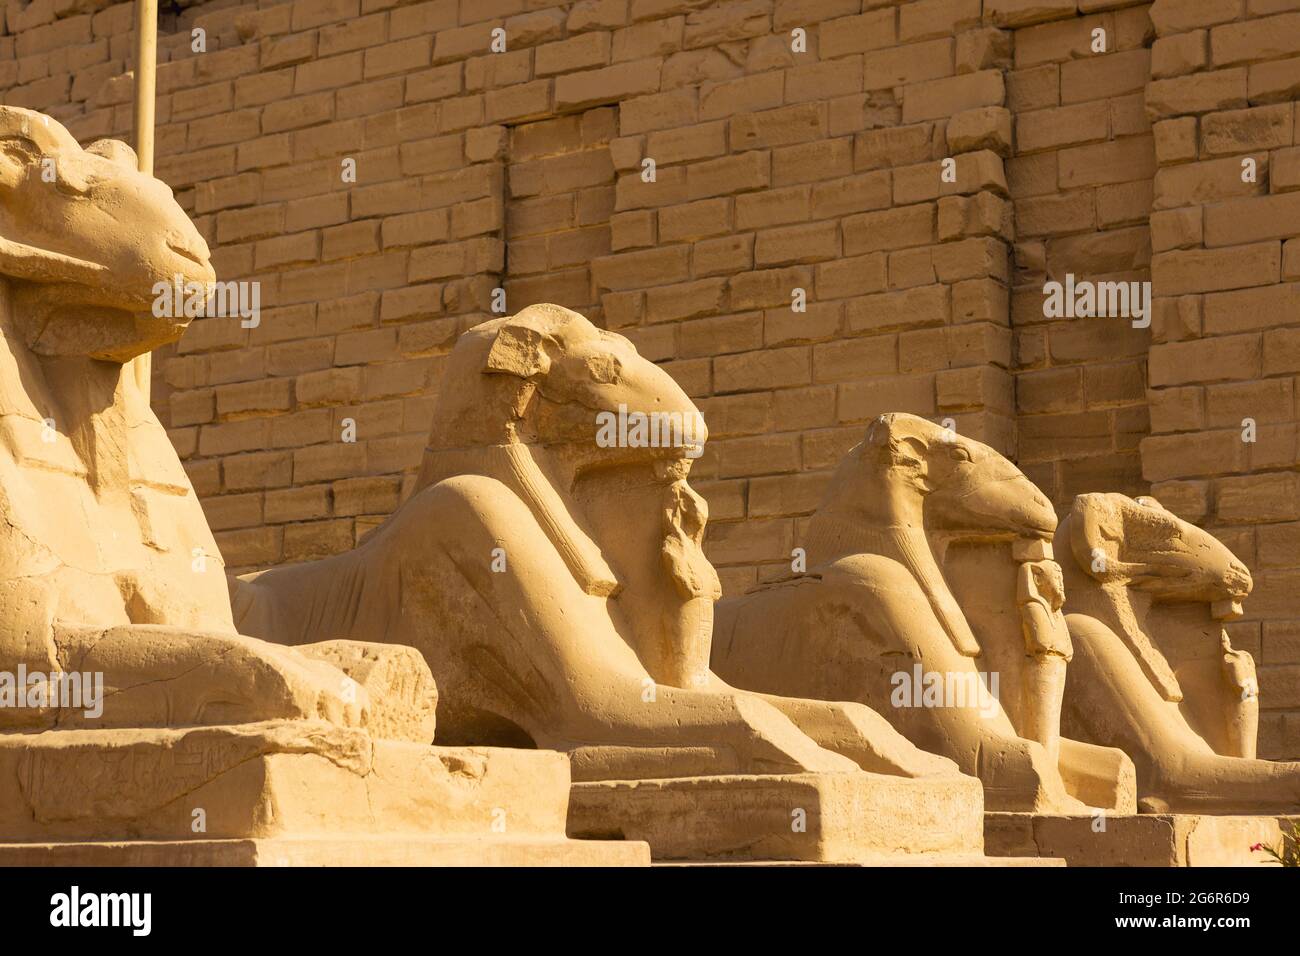 Tempio di Karnak, colossali sculture dell'antico Egitto nella valle del Nilo a Luxor, geroglifici goffrati sulle pareti. Foto Stock